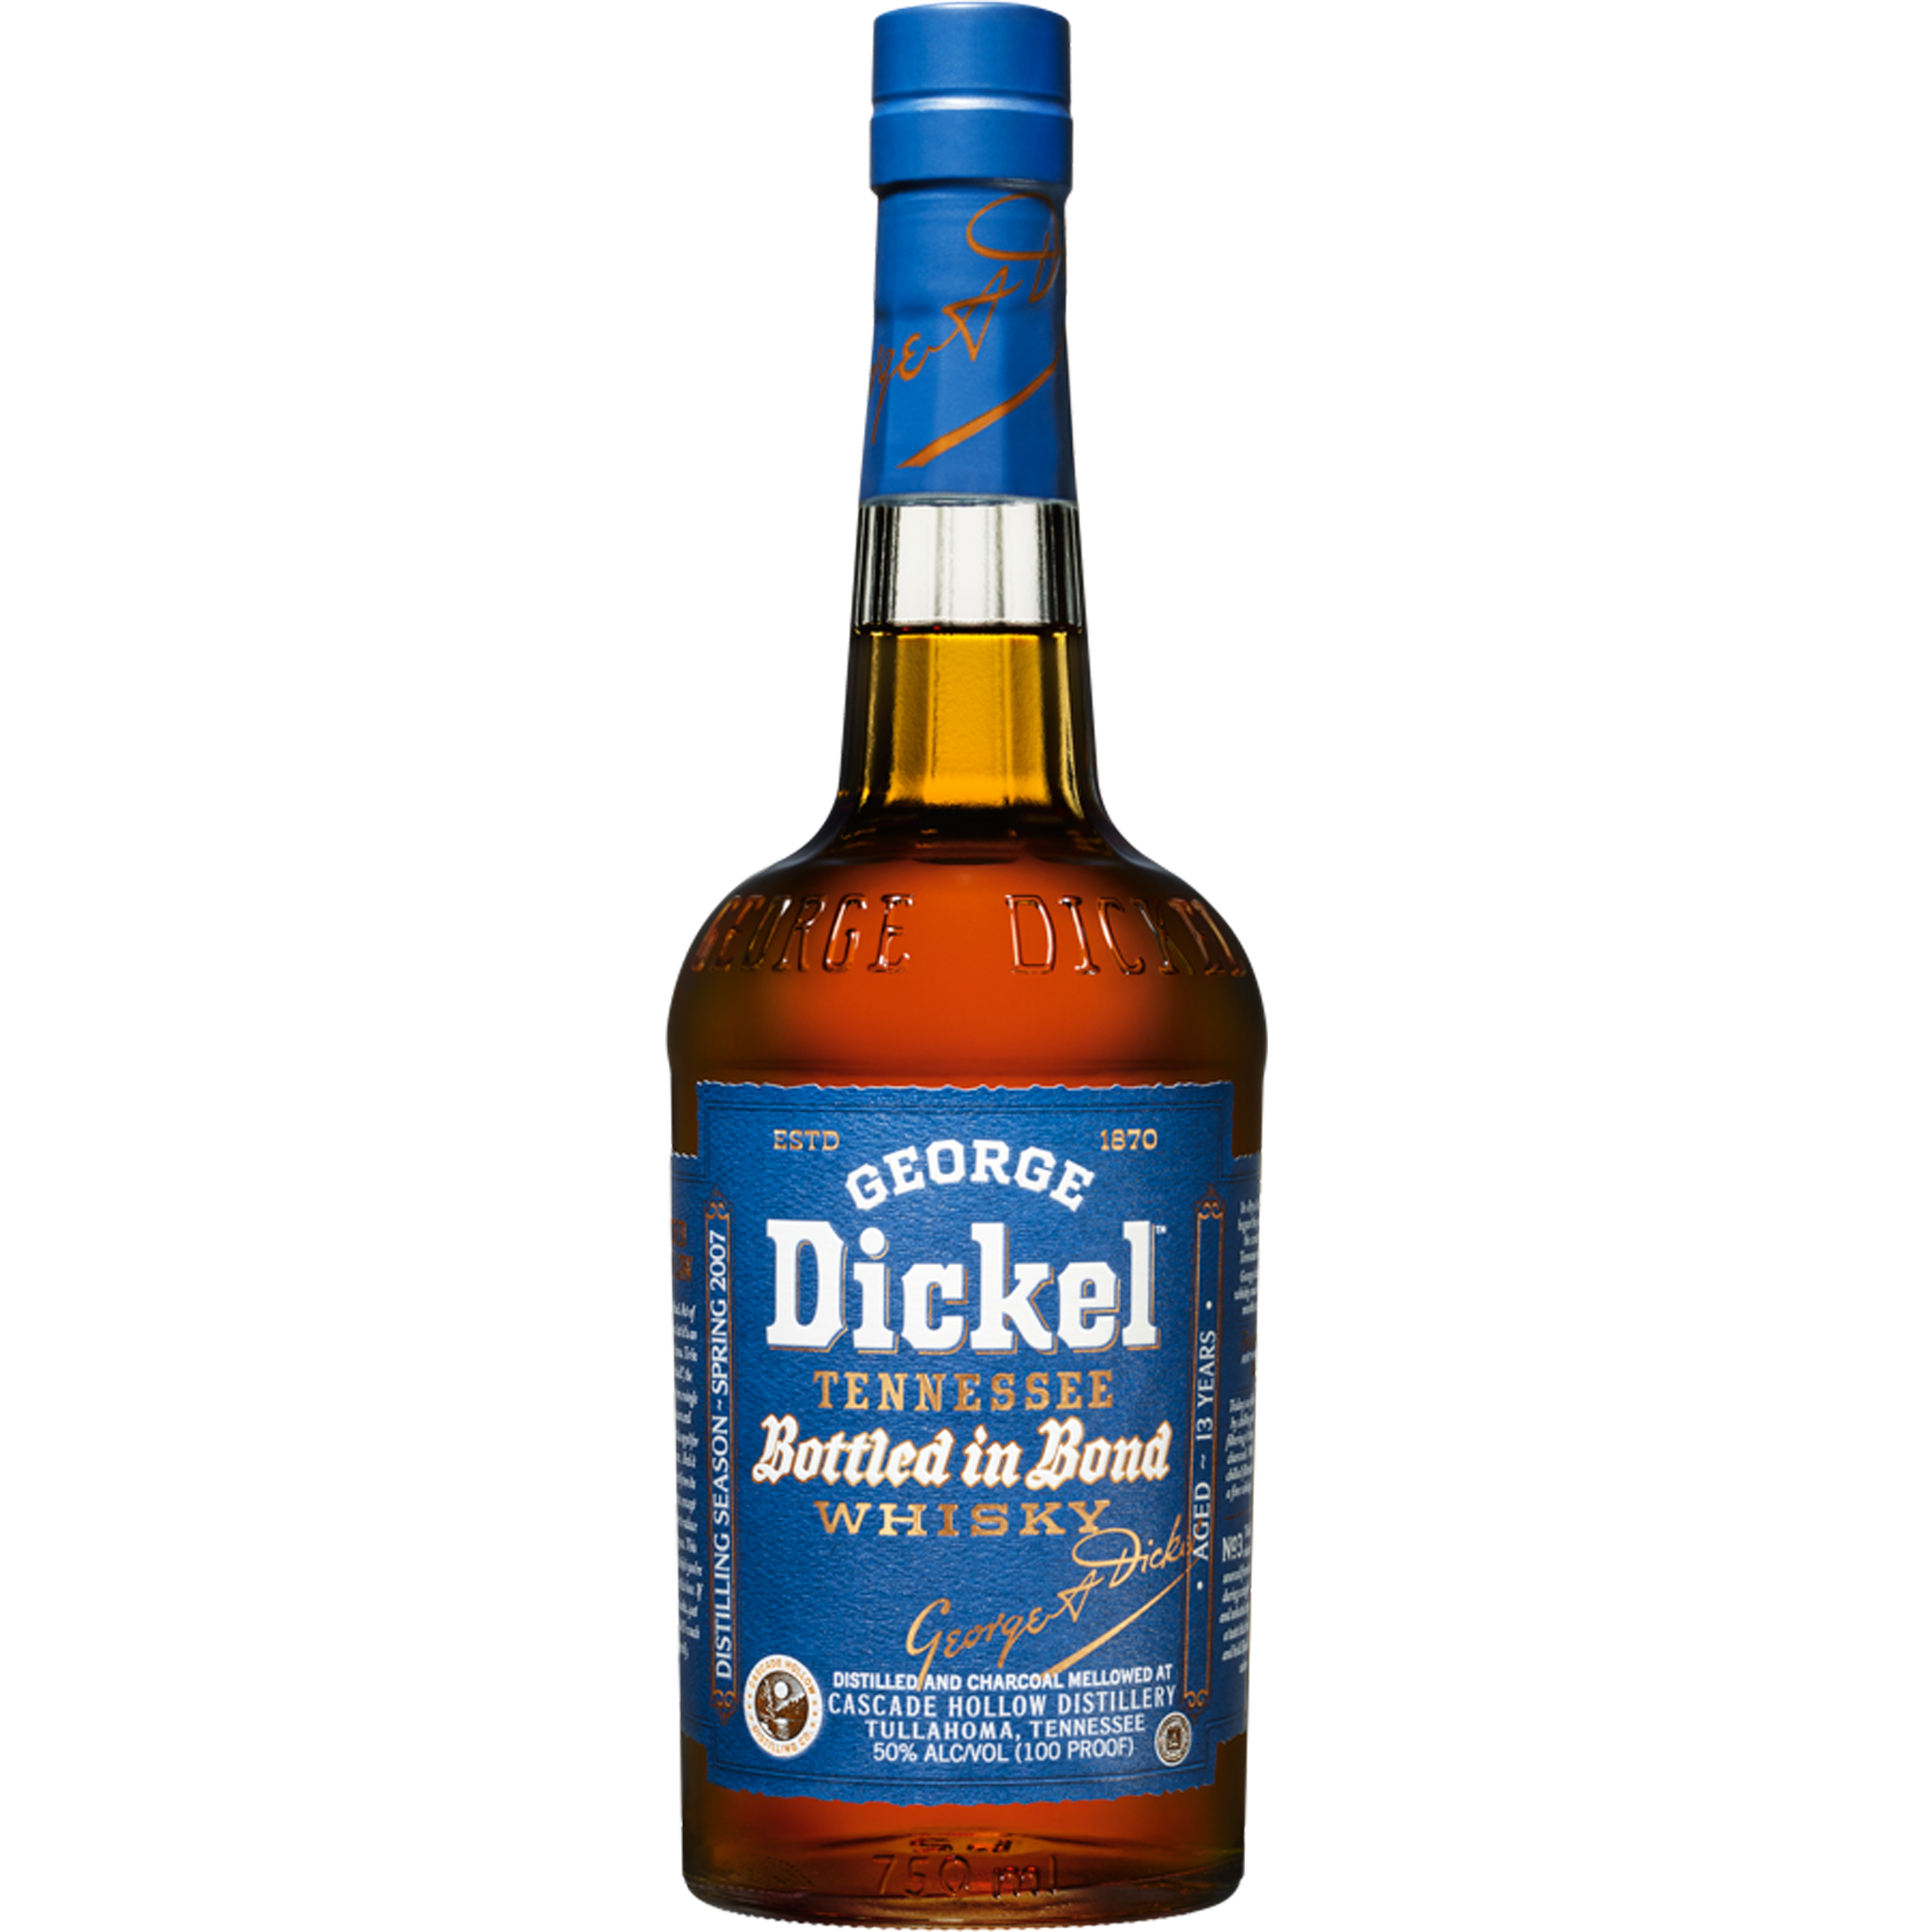 George Dickel Bottled in Bond Distilling Season 2007 Tennessee Whisky 13y